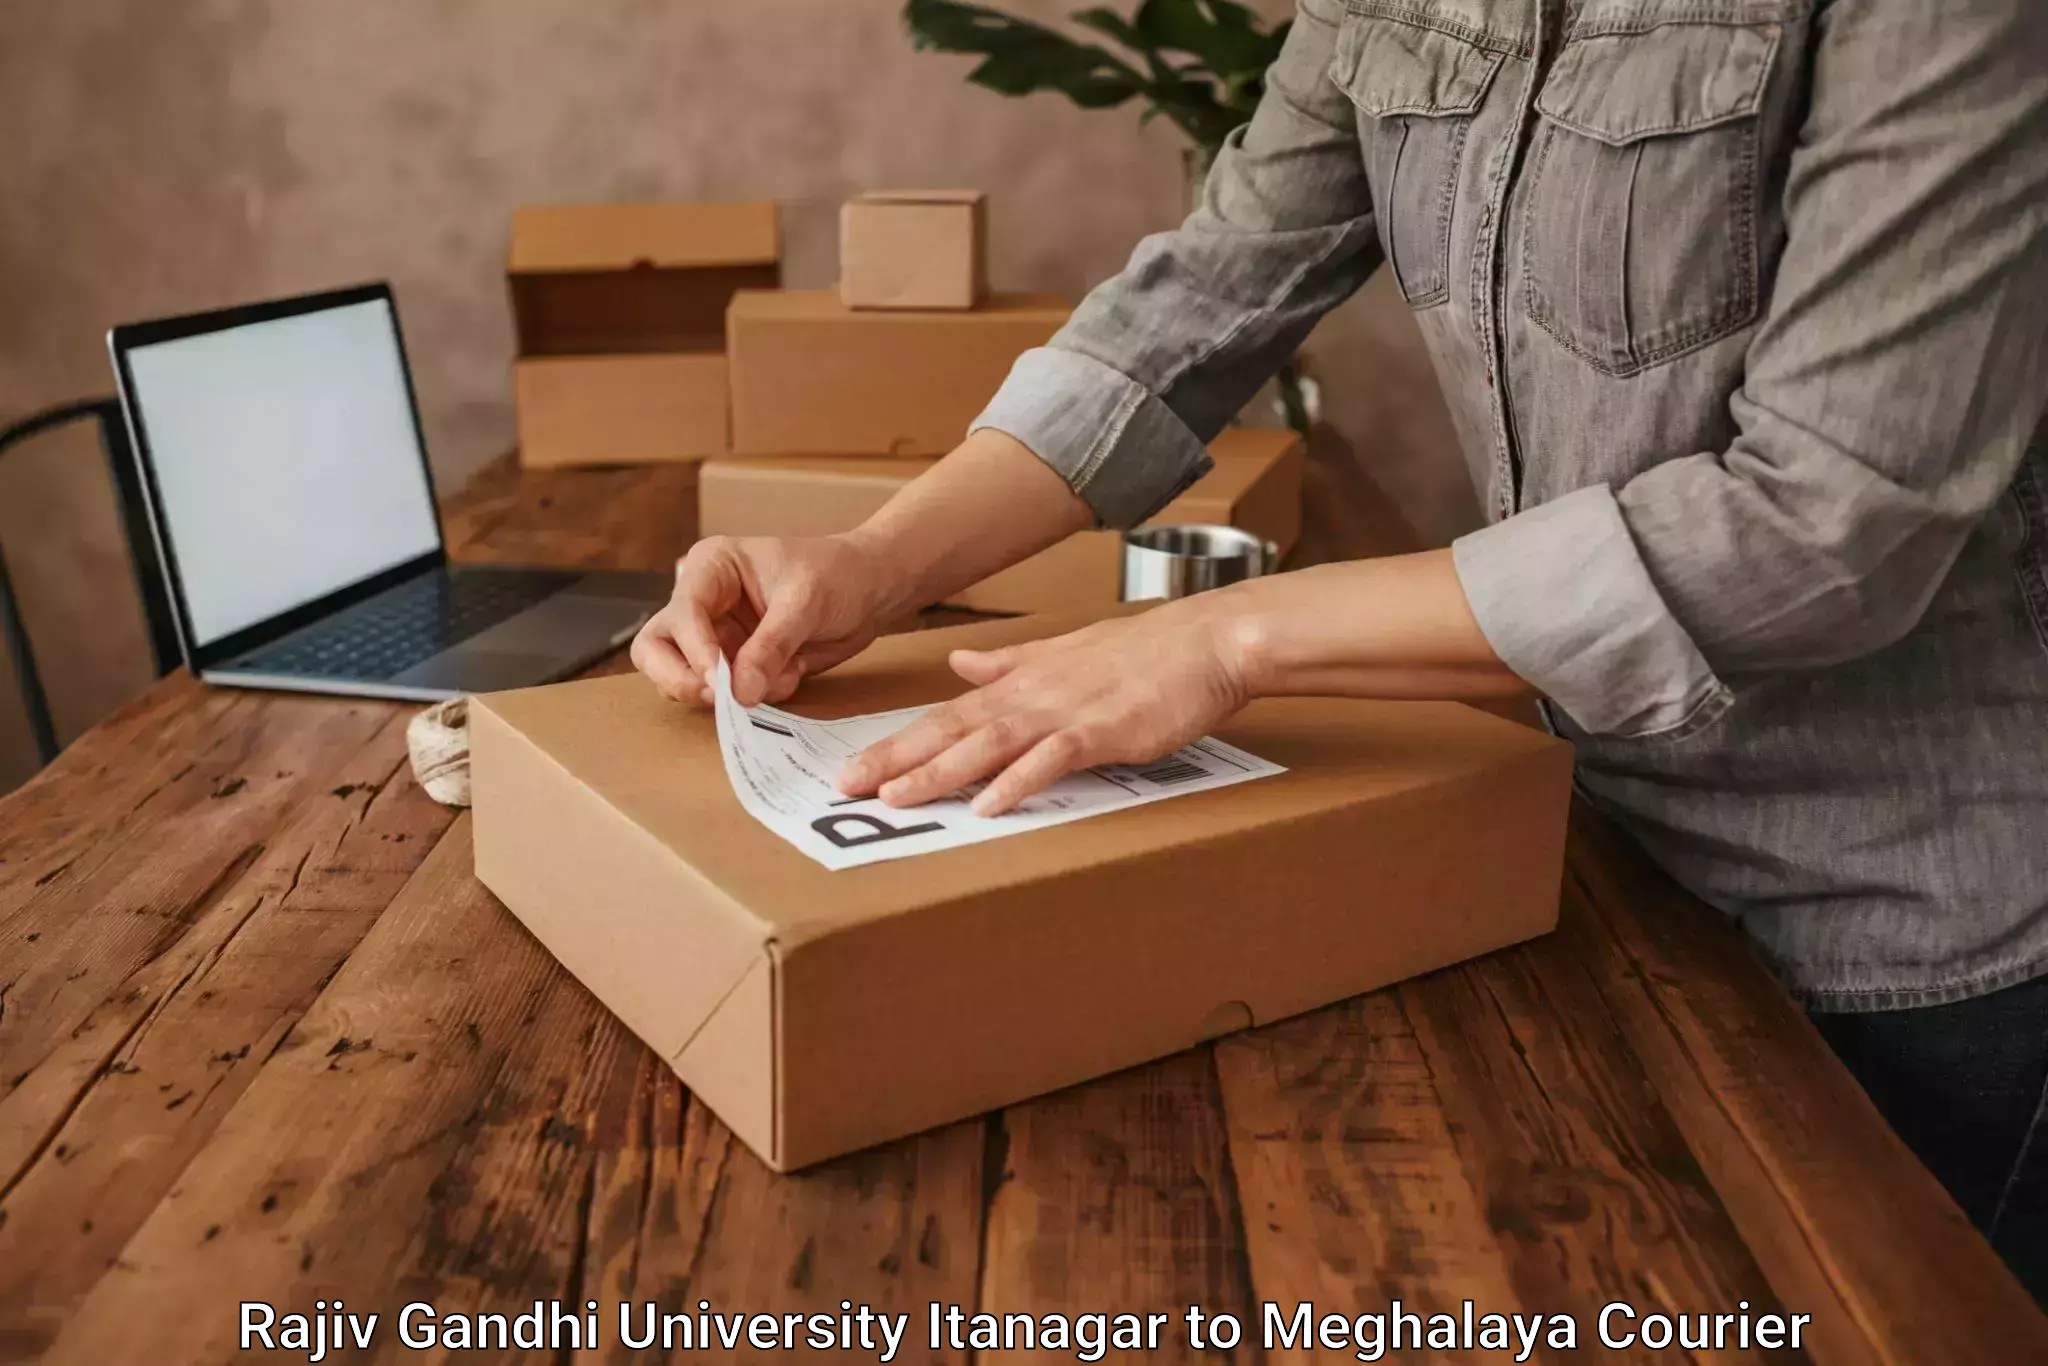 Large package courier Rajiv Gandhi University Itanagar to Shillong